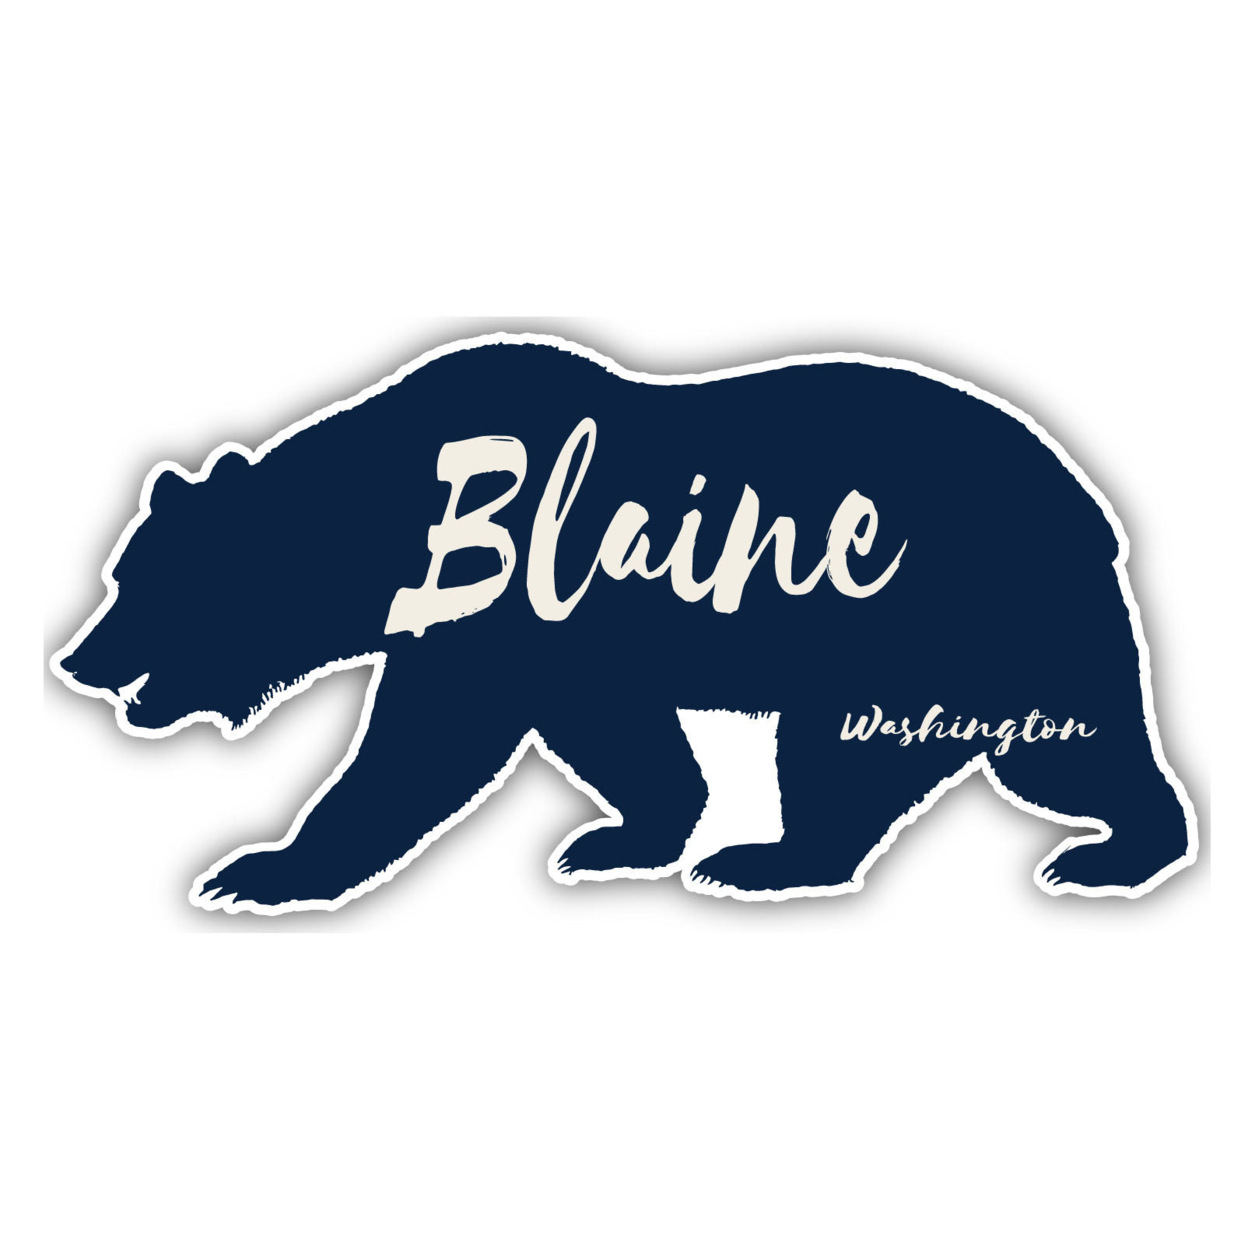 Blaine Washington Souvenir Decorative Stickers (Choose Theme And Size) - Single Unit, 4-Inch, Tent